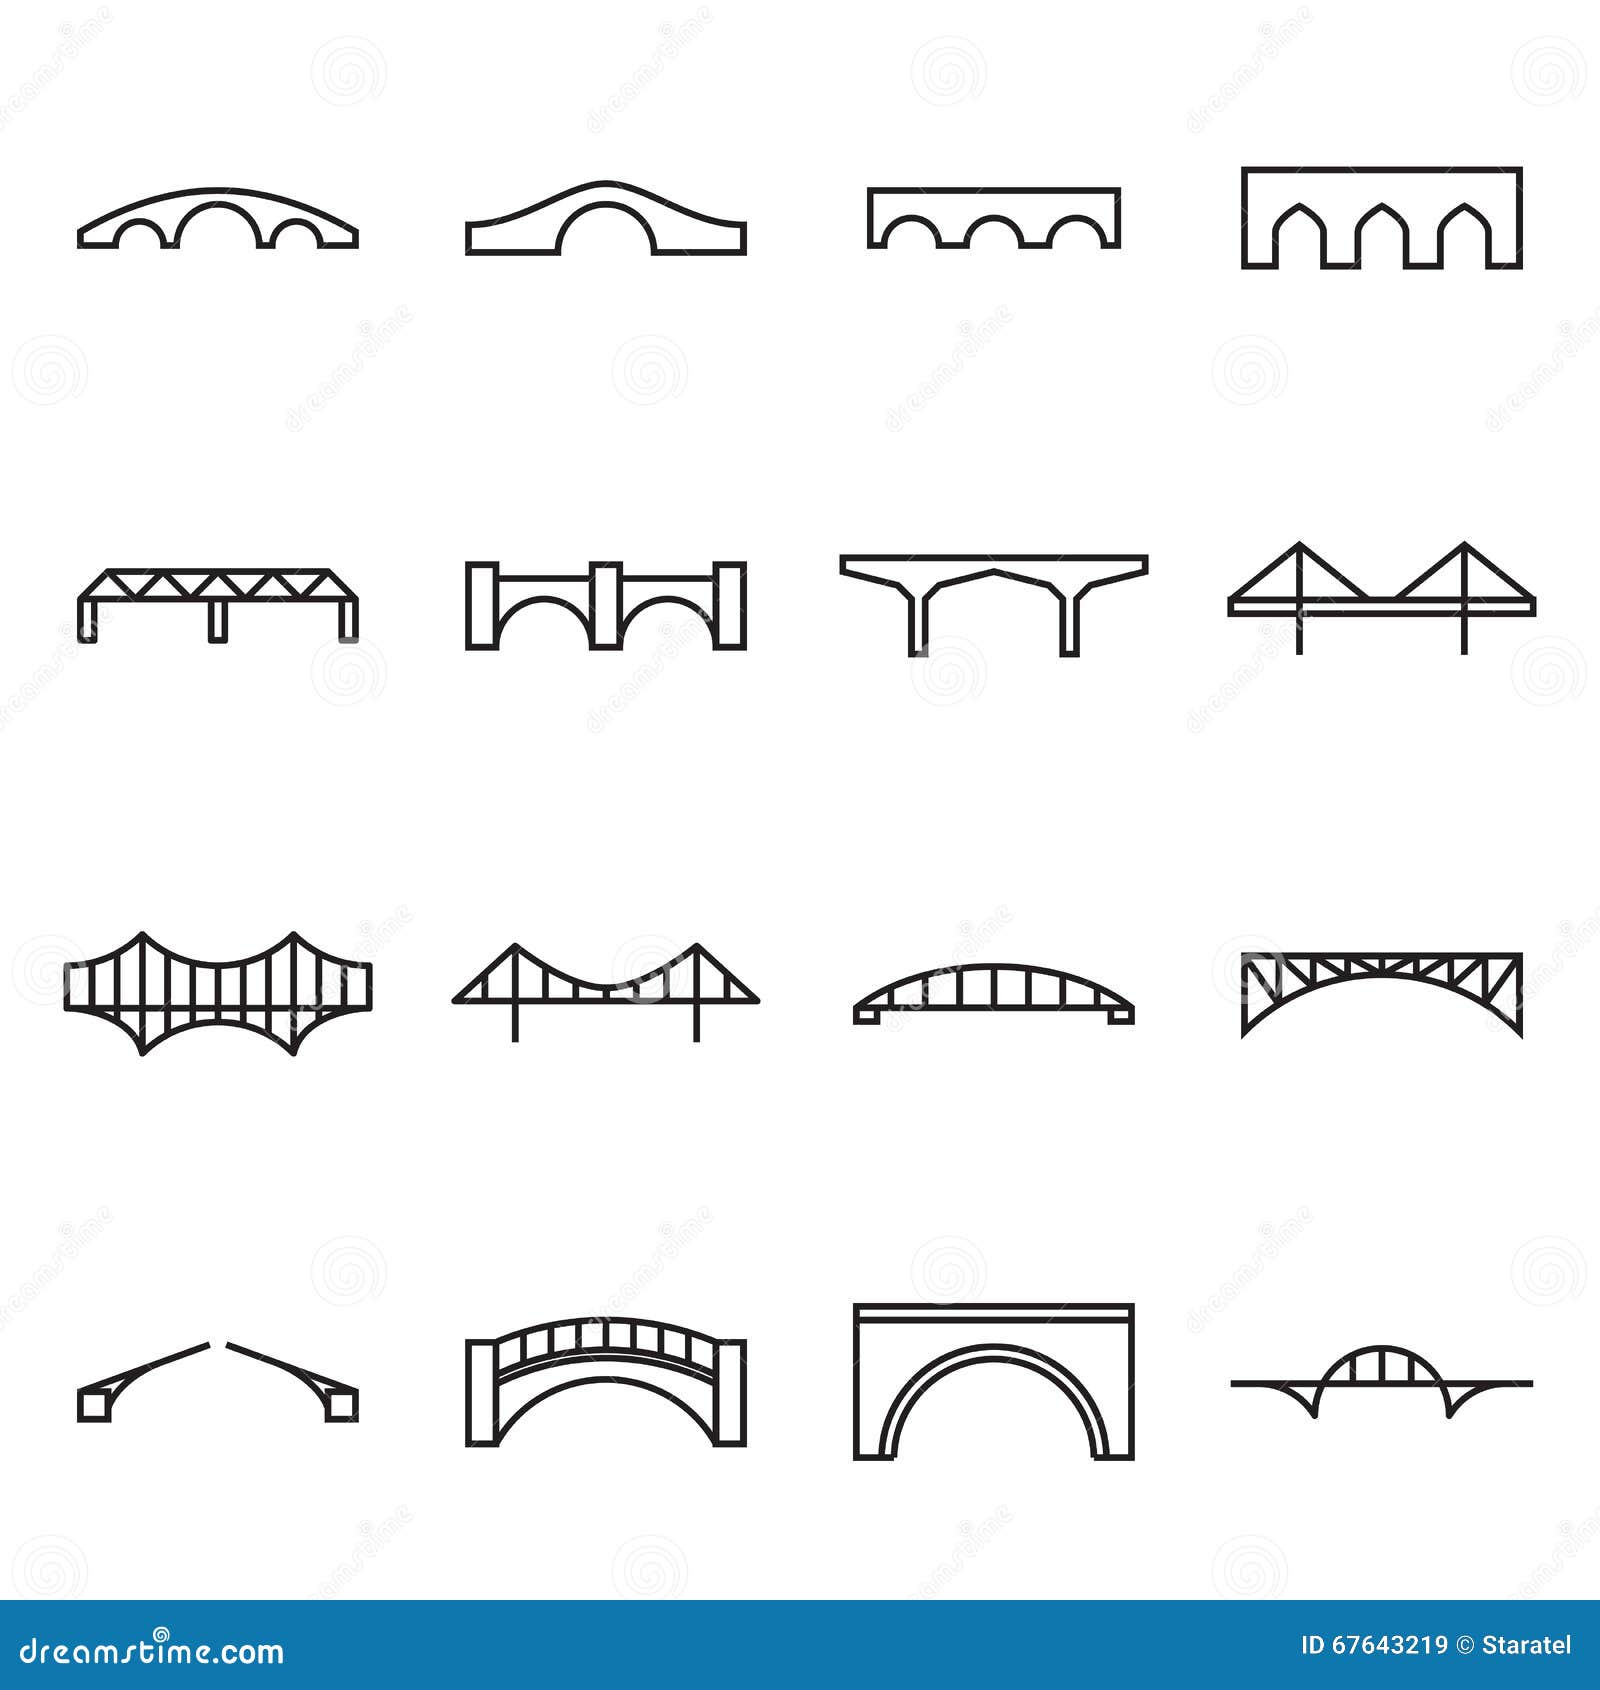 linear icons of bridges. s of bridges